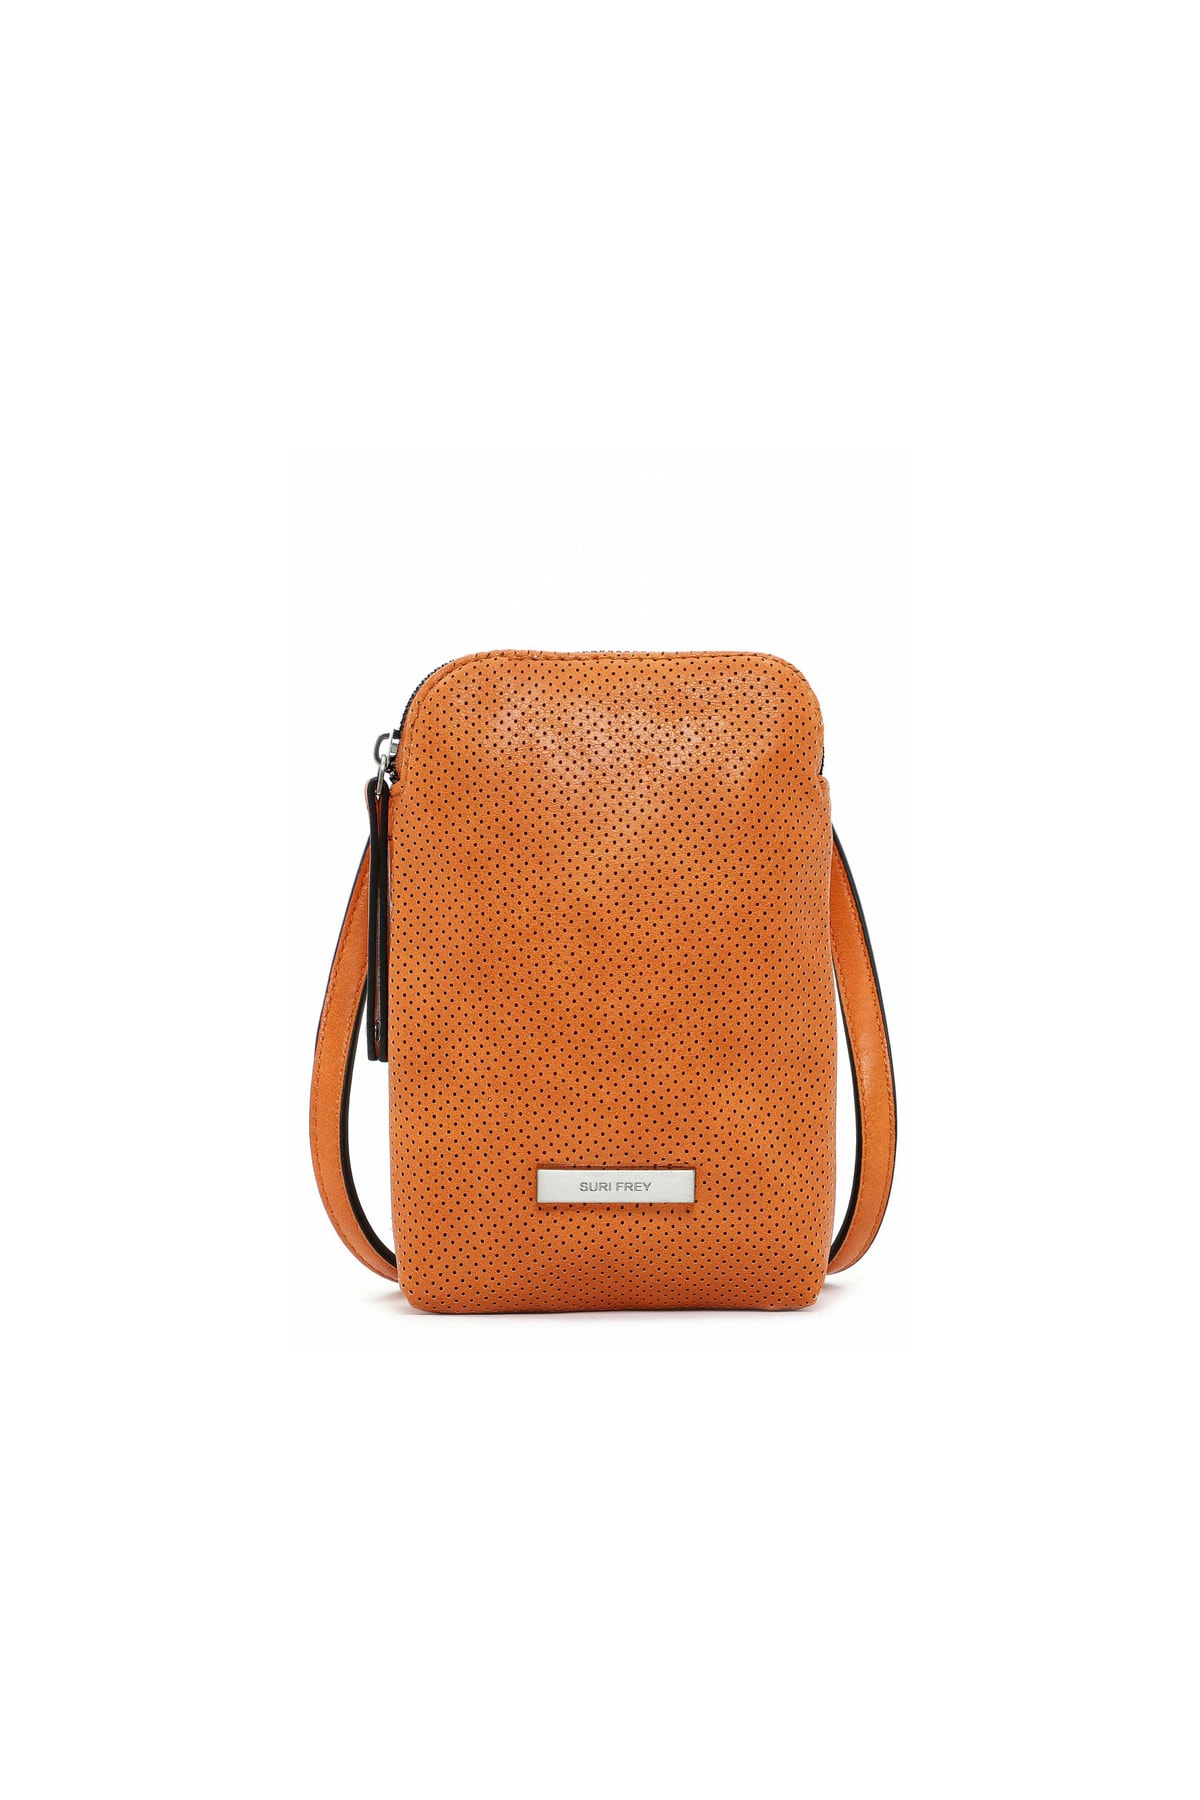 SURI FREY Handtasche Orange Strukturiert Fast ausverkauft FN8935